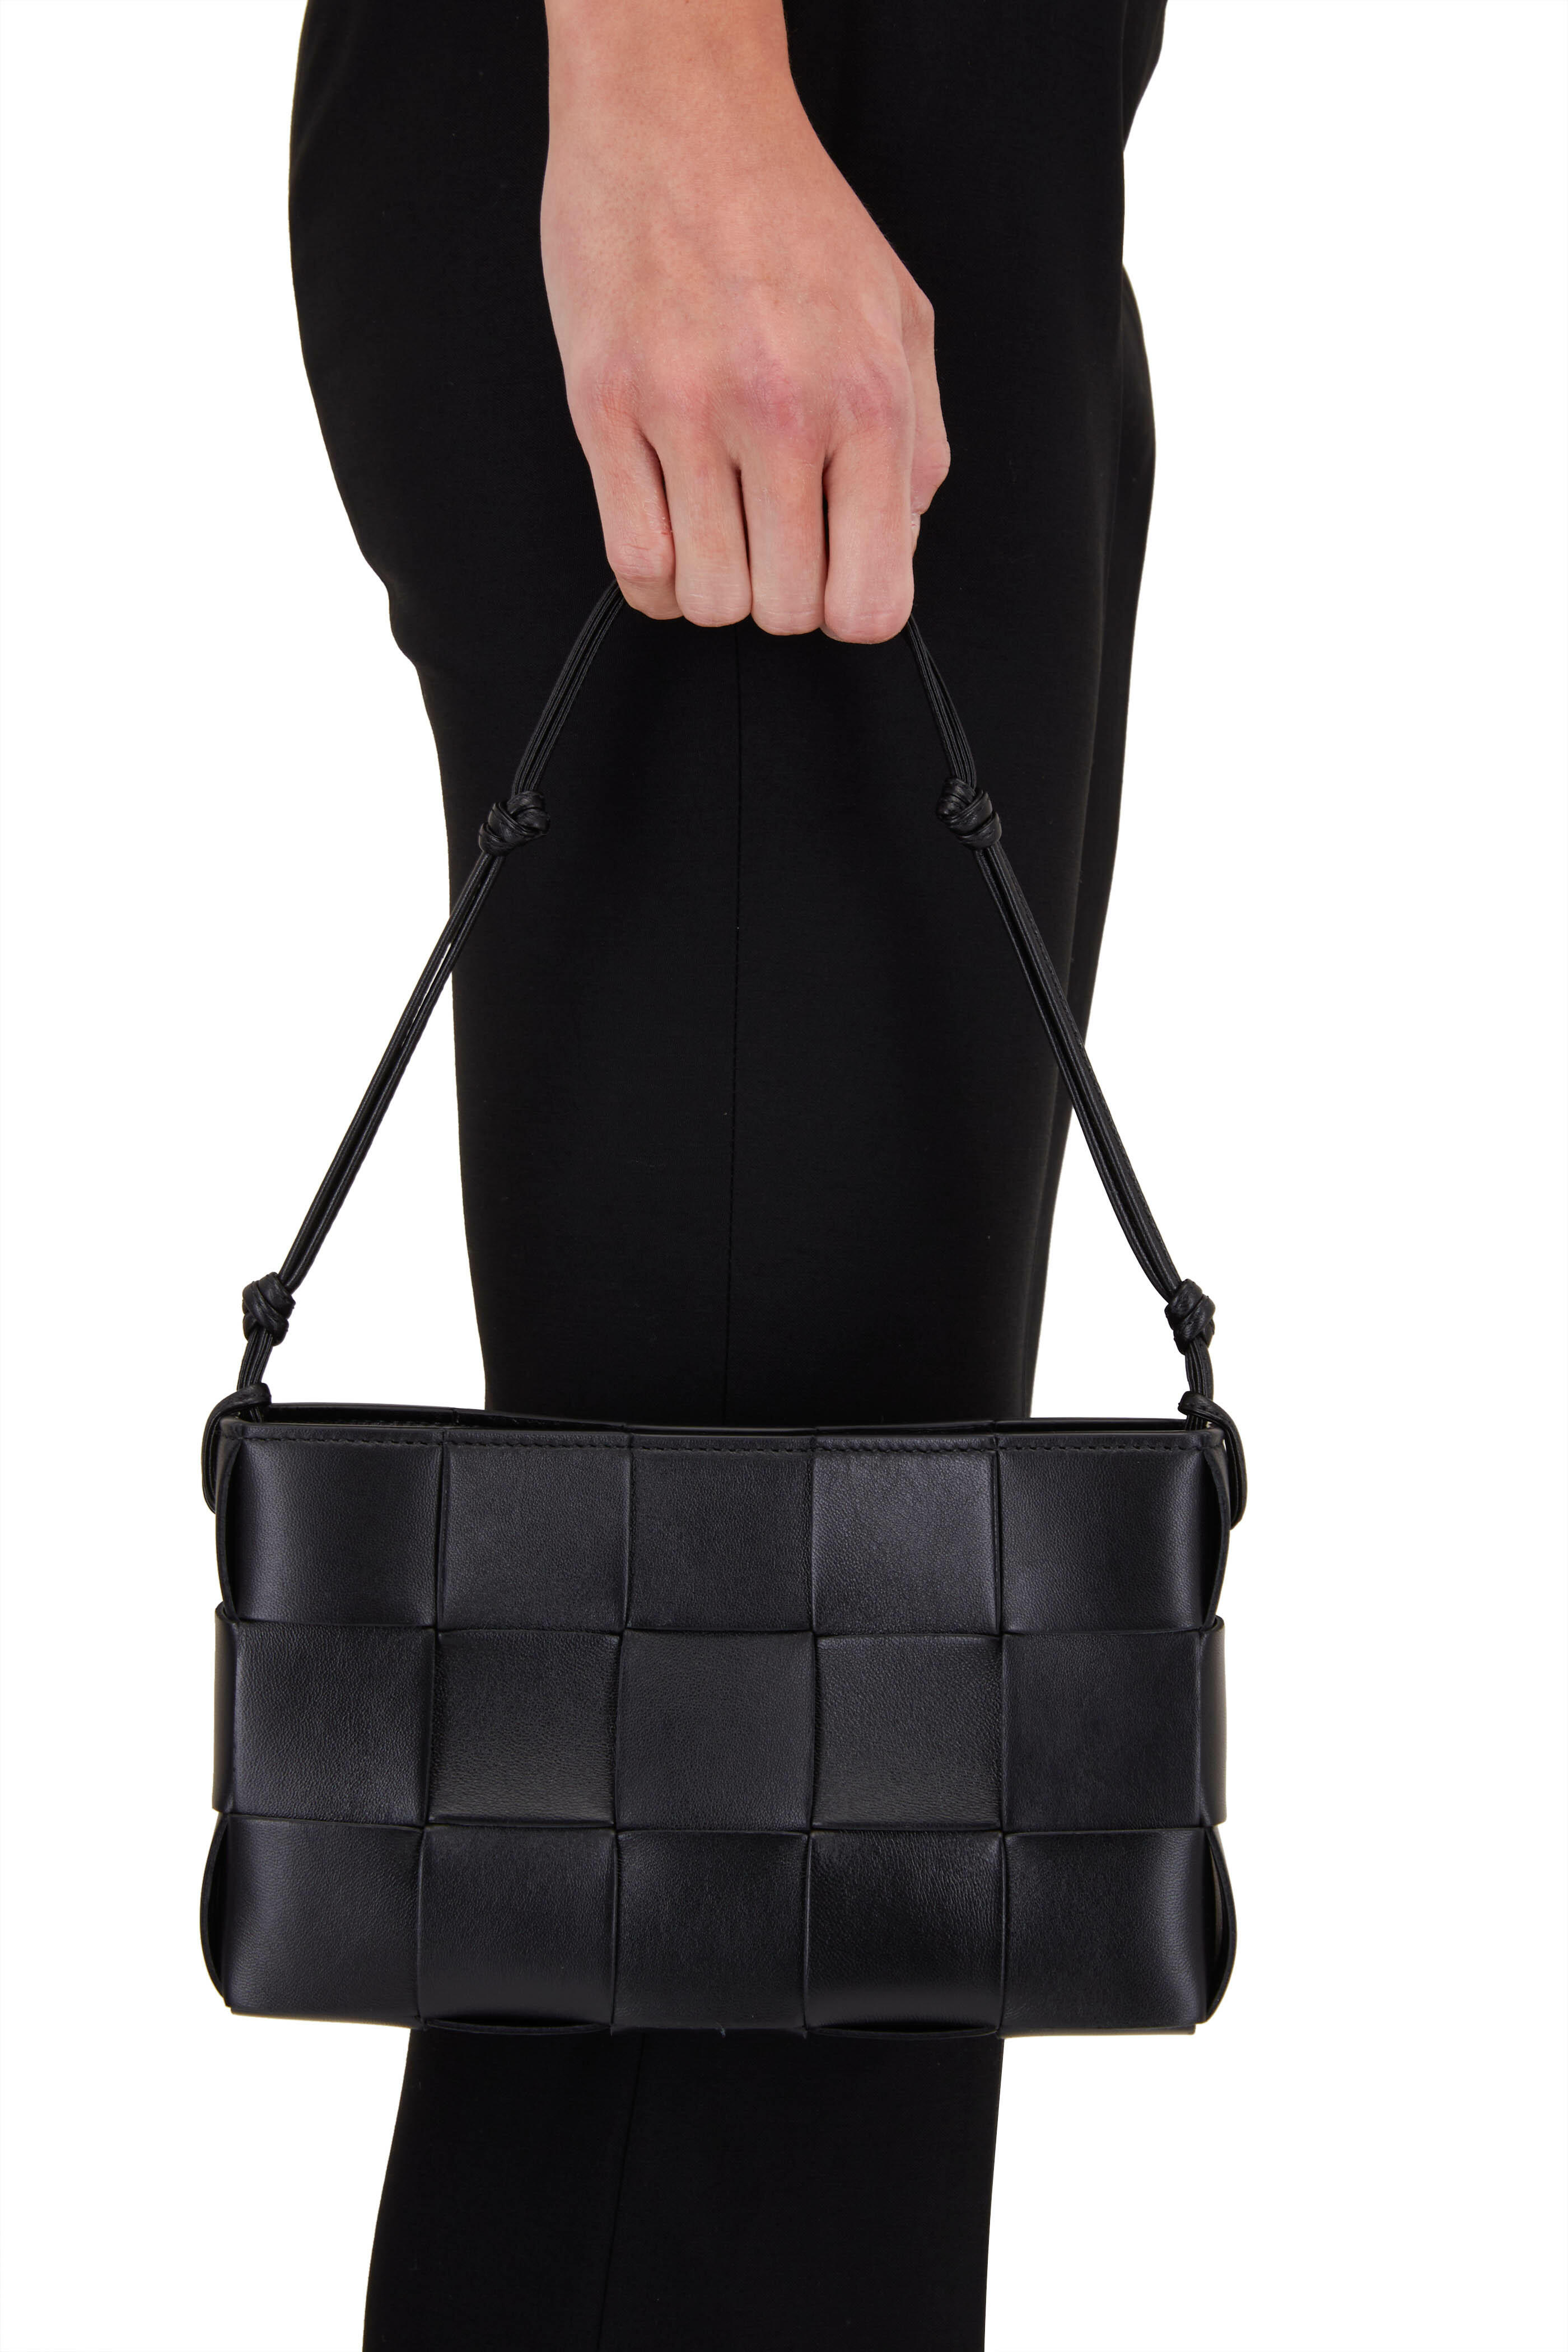 Bottega Veneta Shoulder Bag Messenger Men's Vintage Leather Black